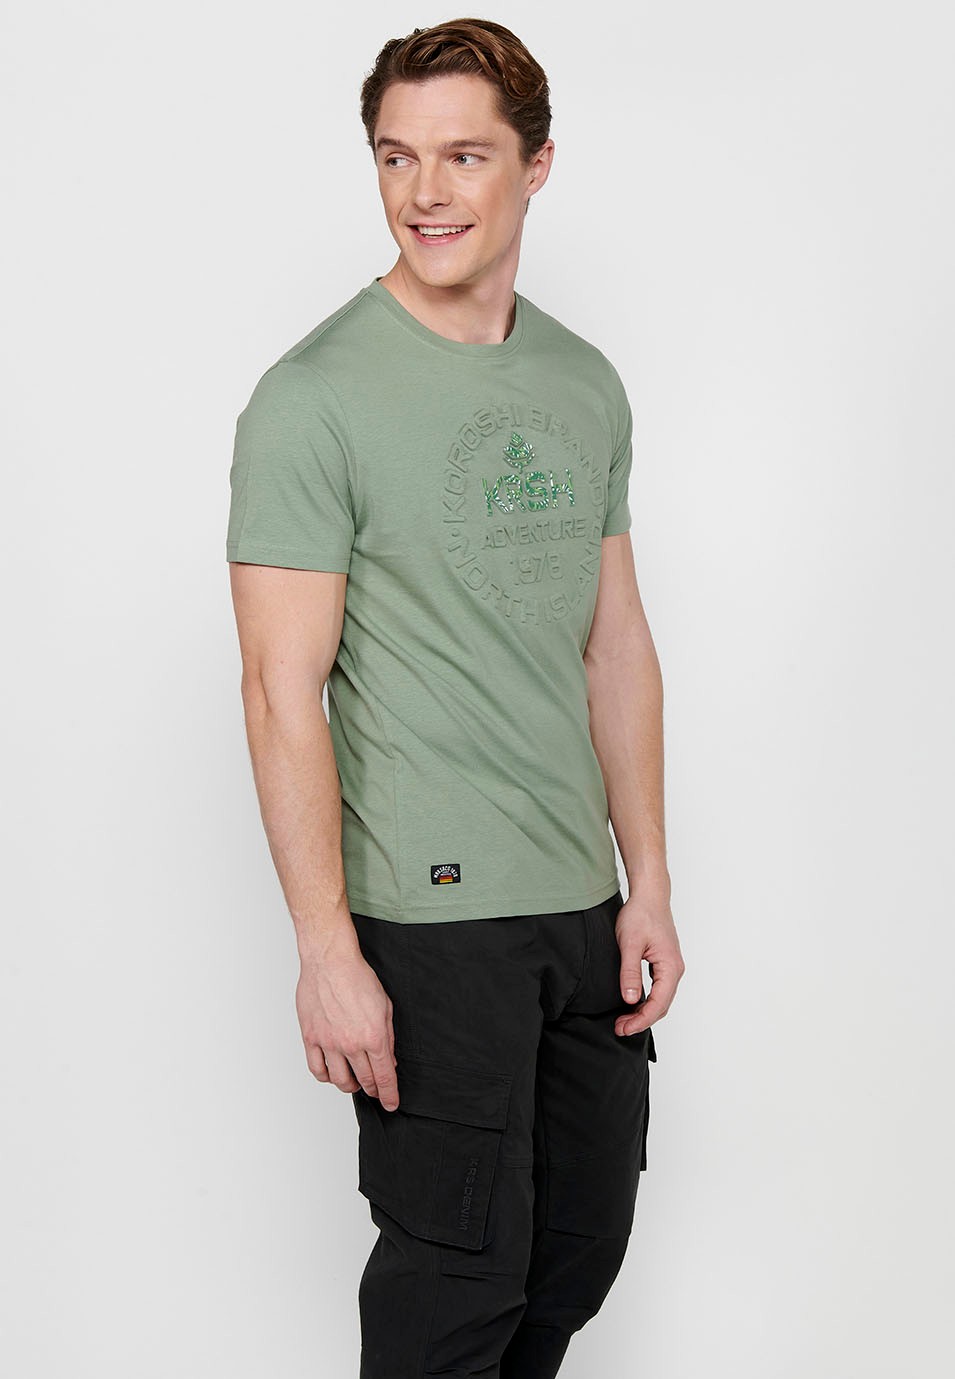 Men's Khaki Color Round Neck Cotton Short Sleeve T-shirt 1